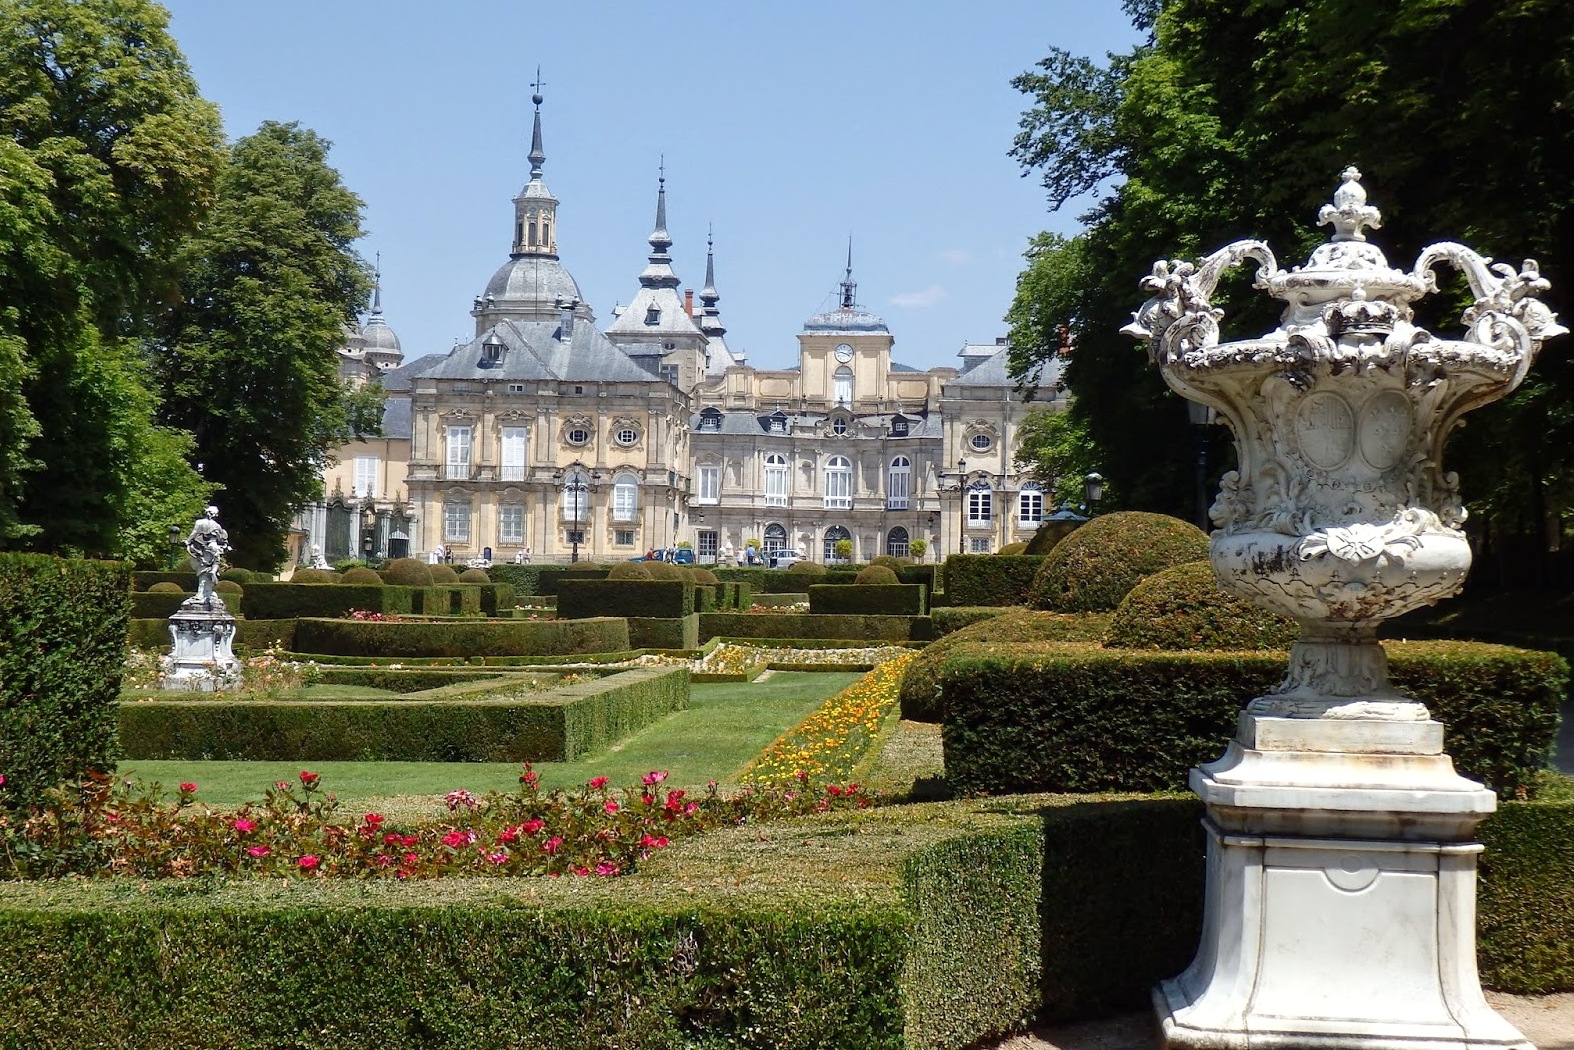 Сади Королівського палацу Ла-Гранха-де-Сан-Ільдефонсо (Jardines del Palacio Real de La Granja de San Ildefonso)